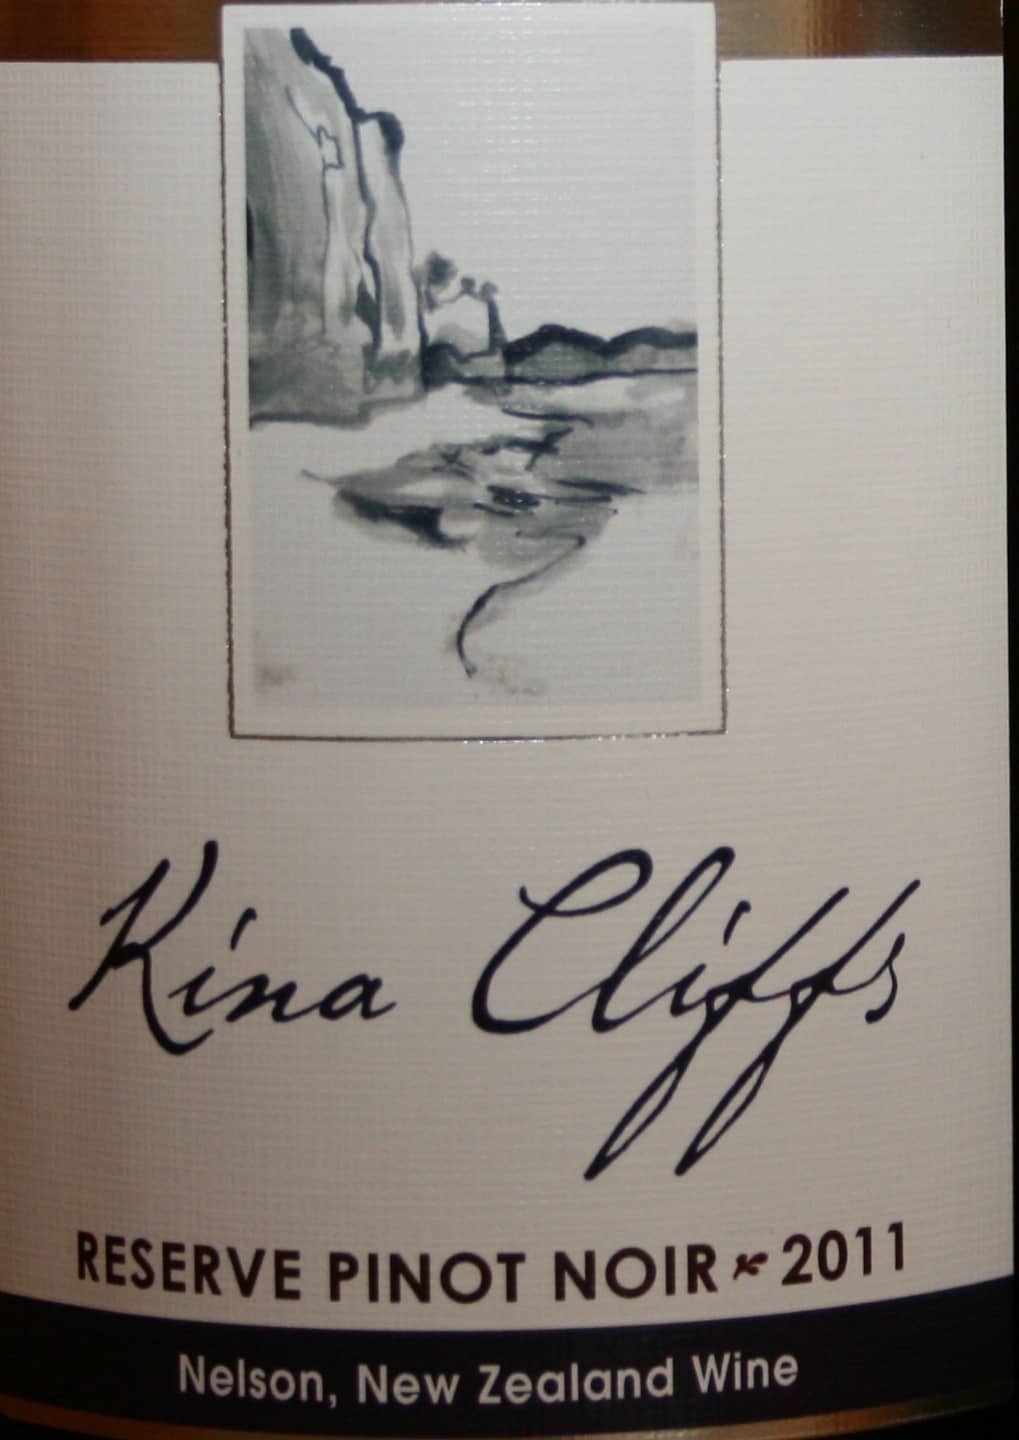 Kina Cliffs Reserve Pinot Noir 2011